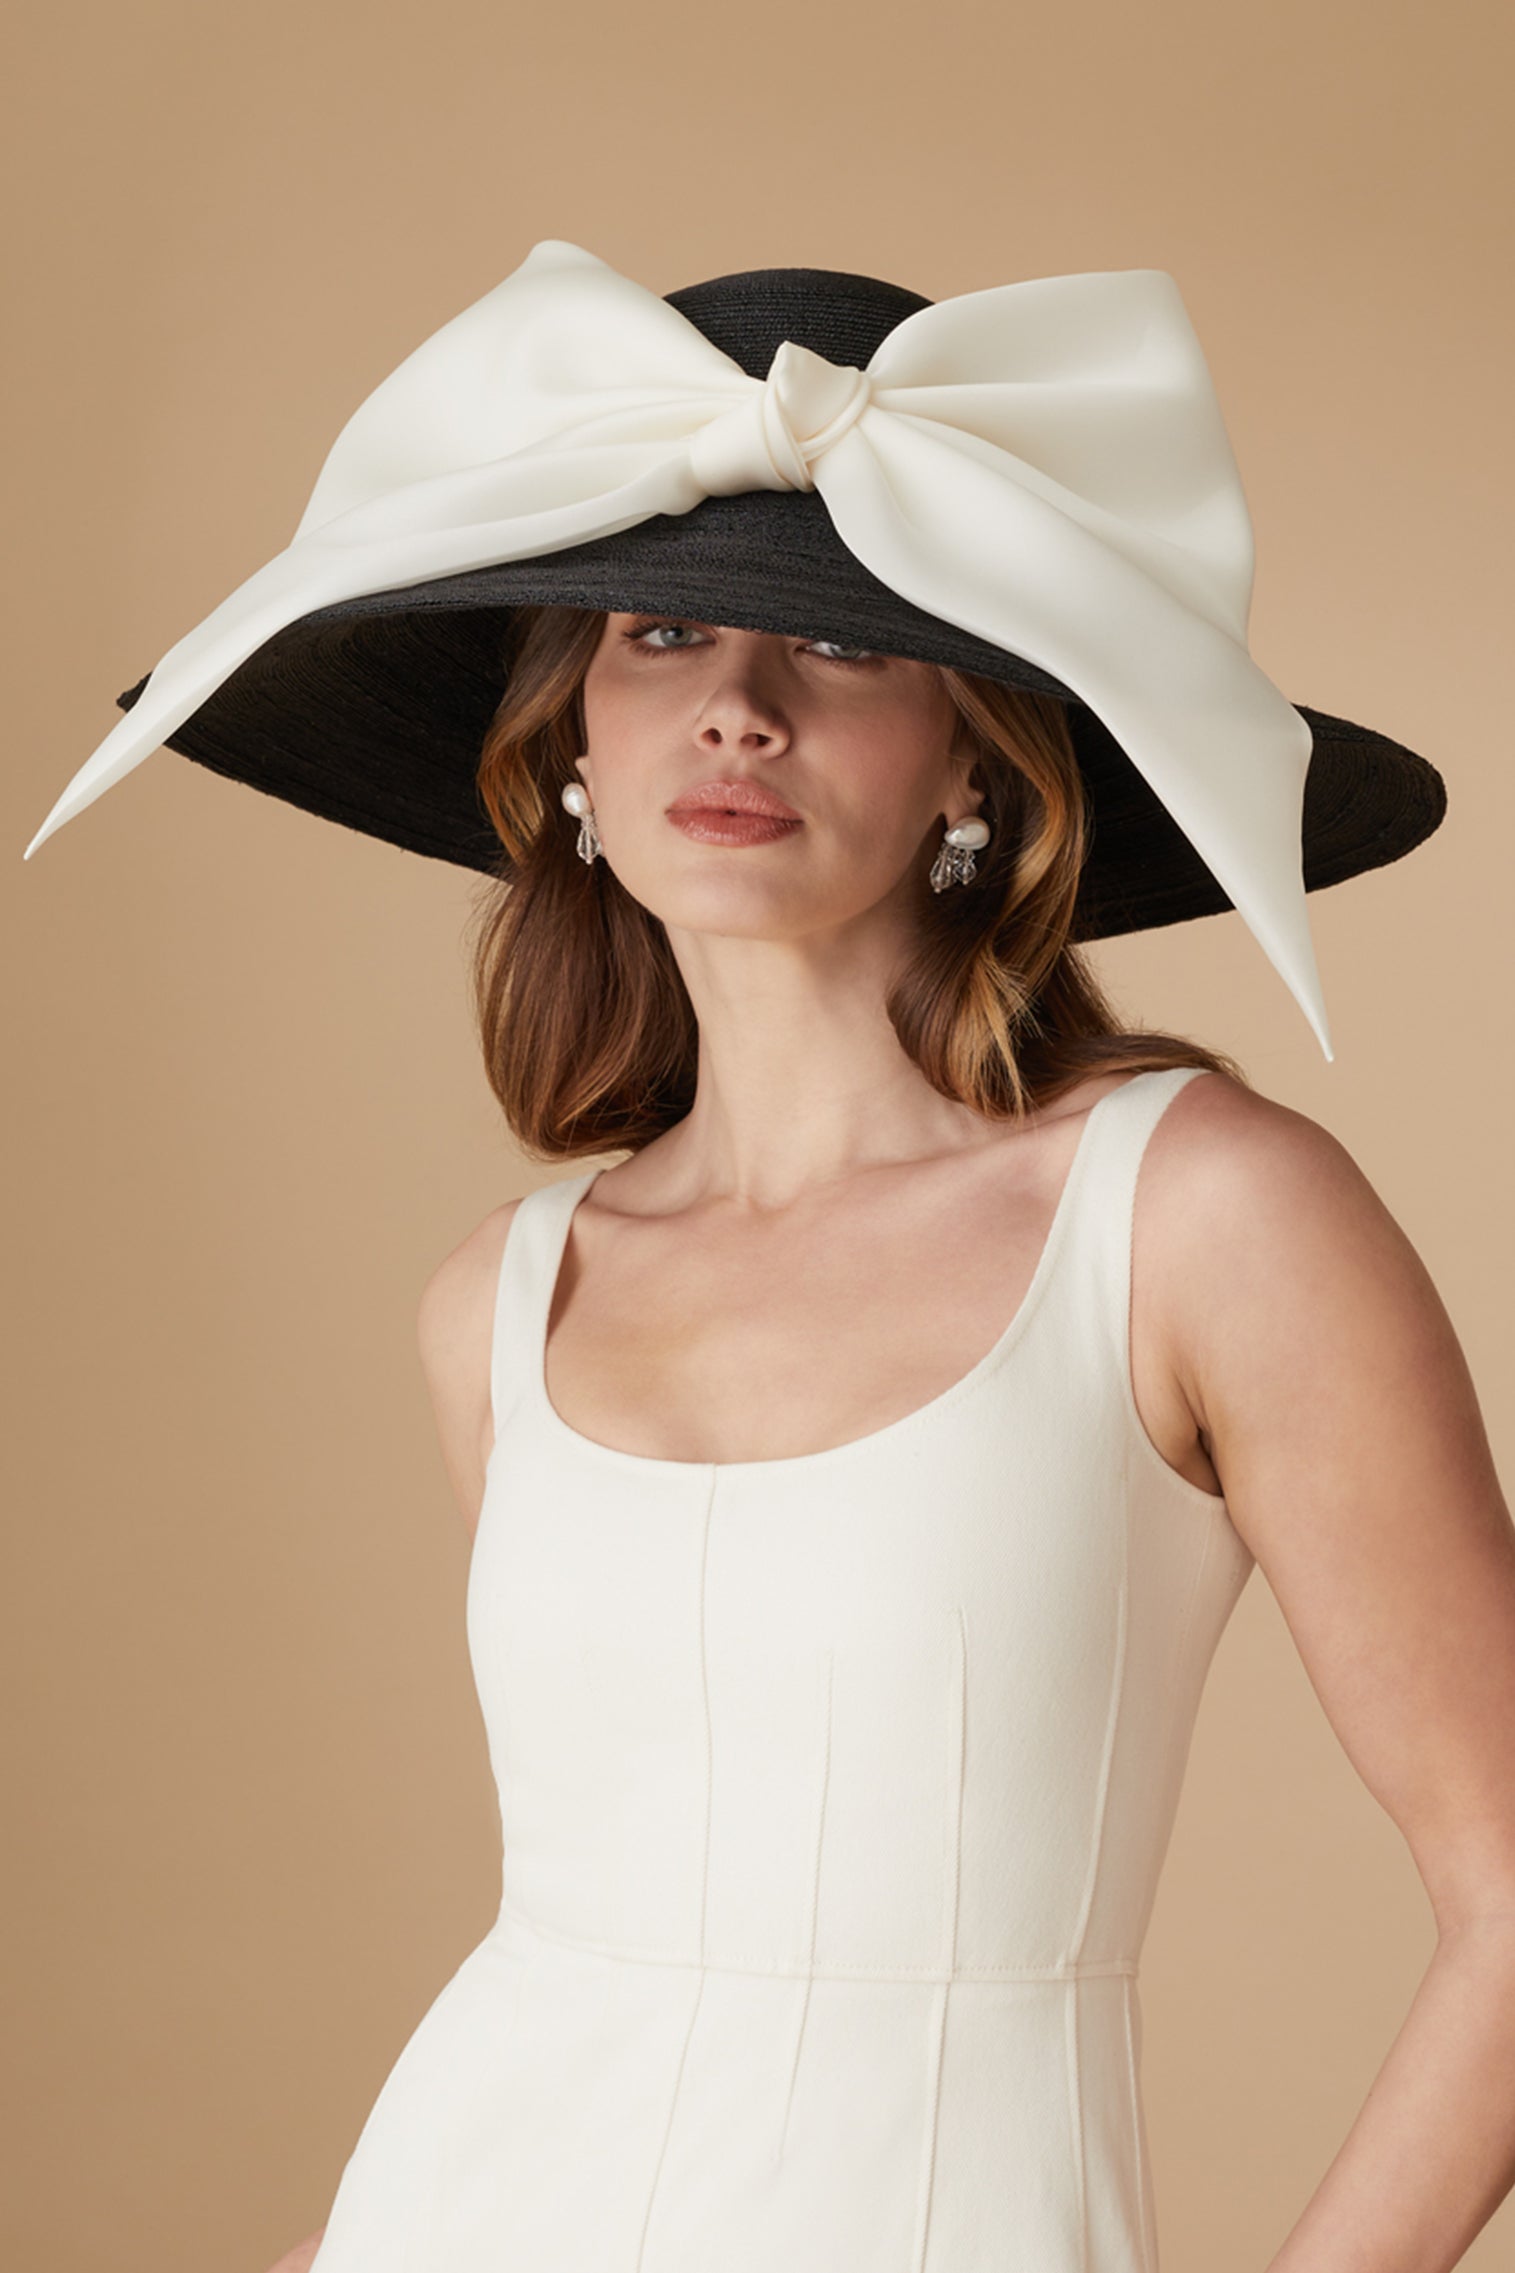 Darjeeling Black Wide Brim Hat - Panamas & Sun Hats for Women - Lock & Co. Hatters London UK